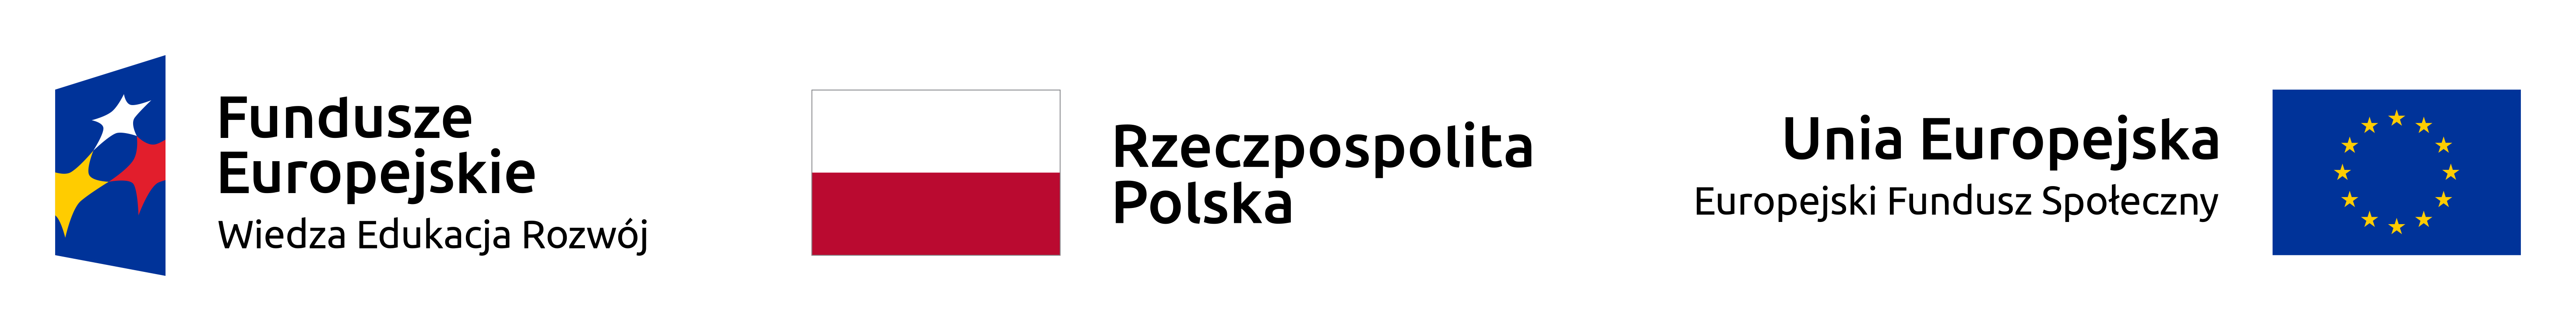 Logo Funduszy Europejskich Wiedza - Edukacja - Rozwój, flaga Polski i napis Rzeczpospolita Polska, flaga Unii Europejskiej i napis Europejski Fundusz Społeczny